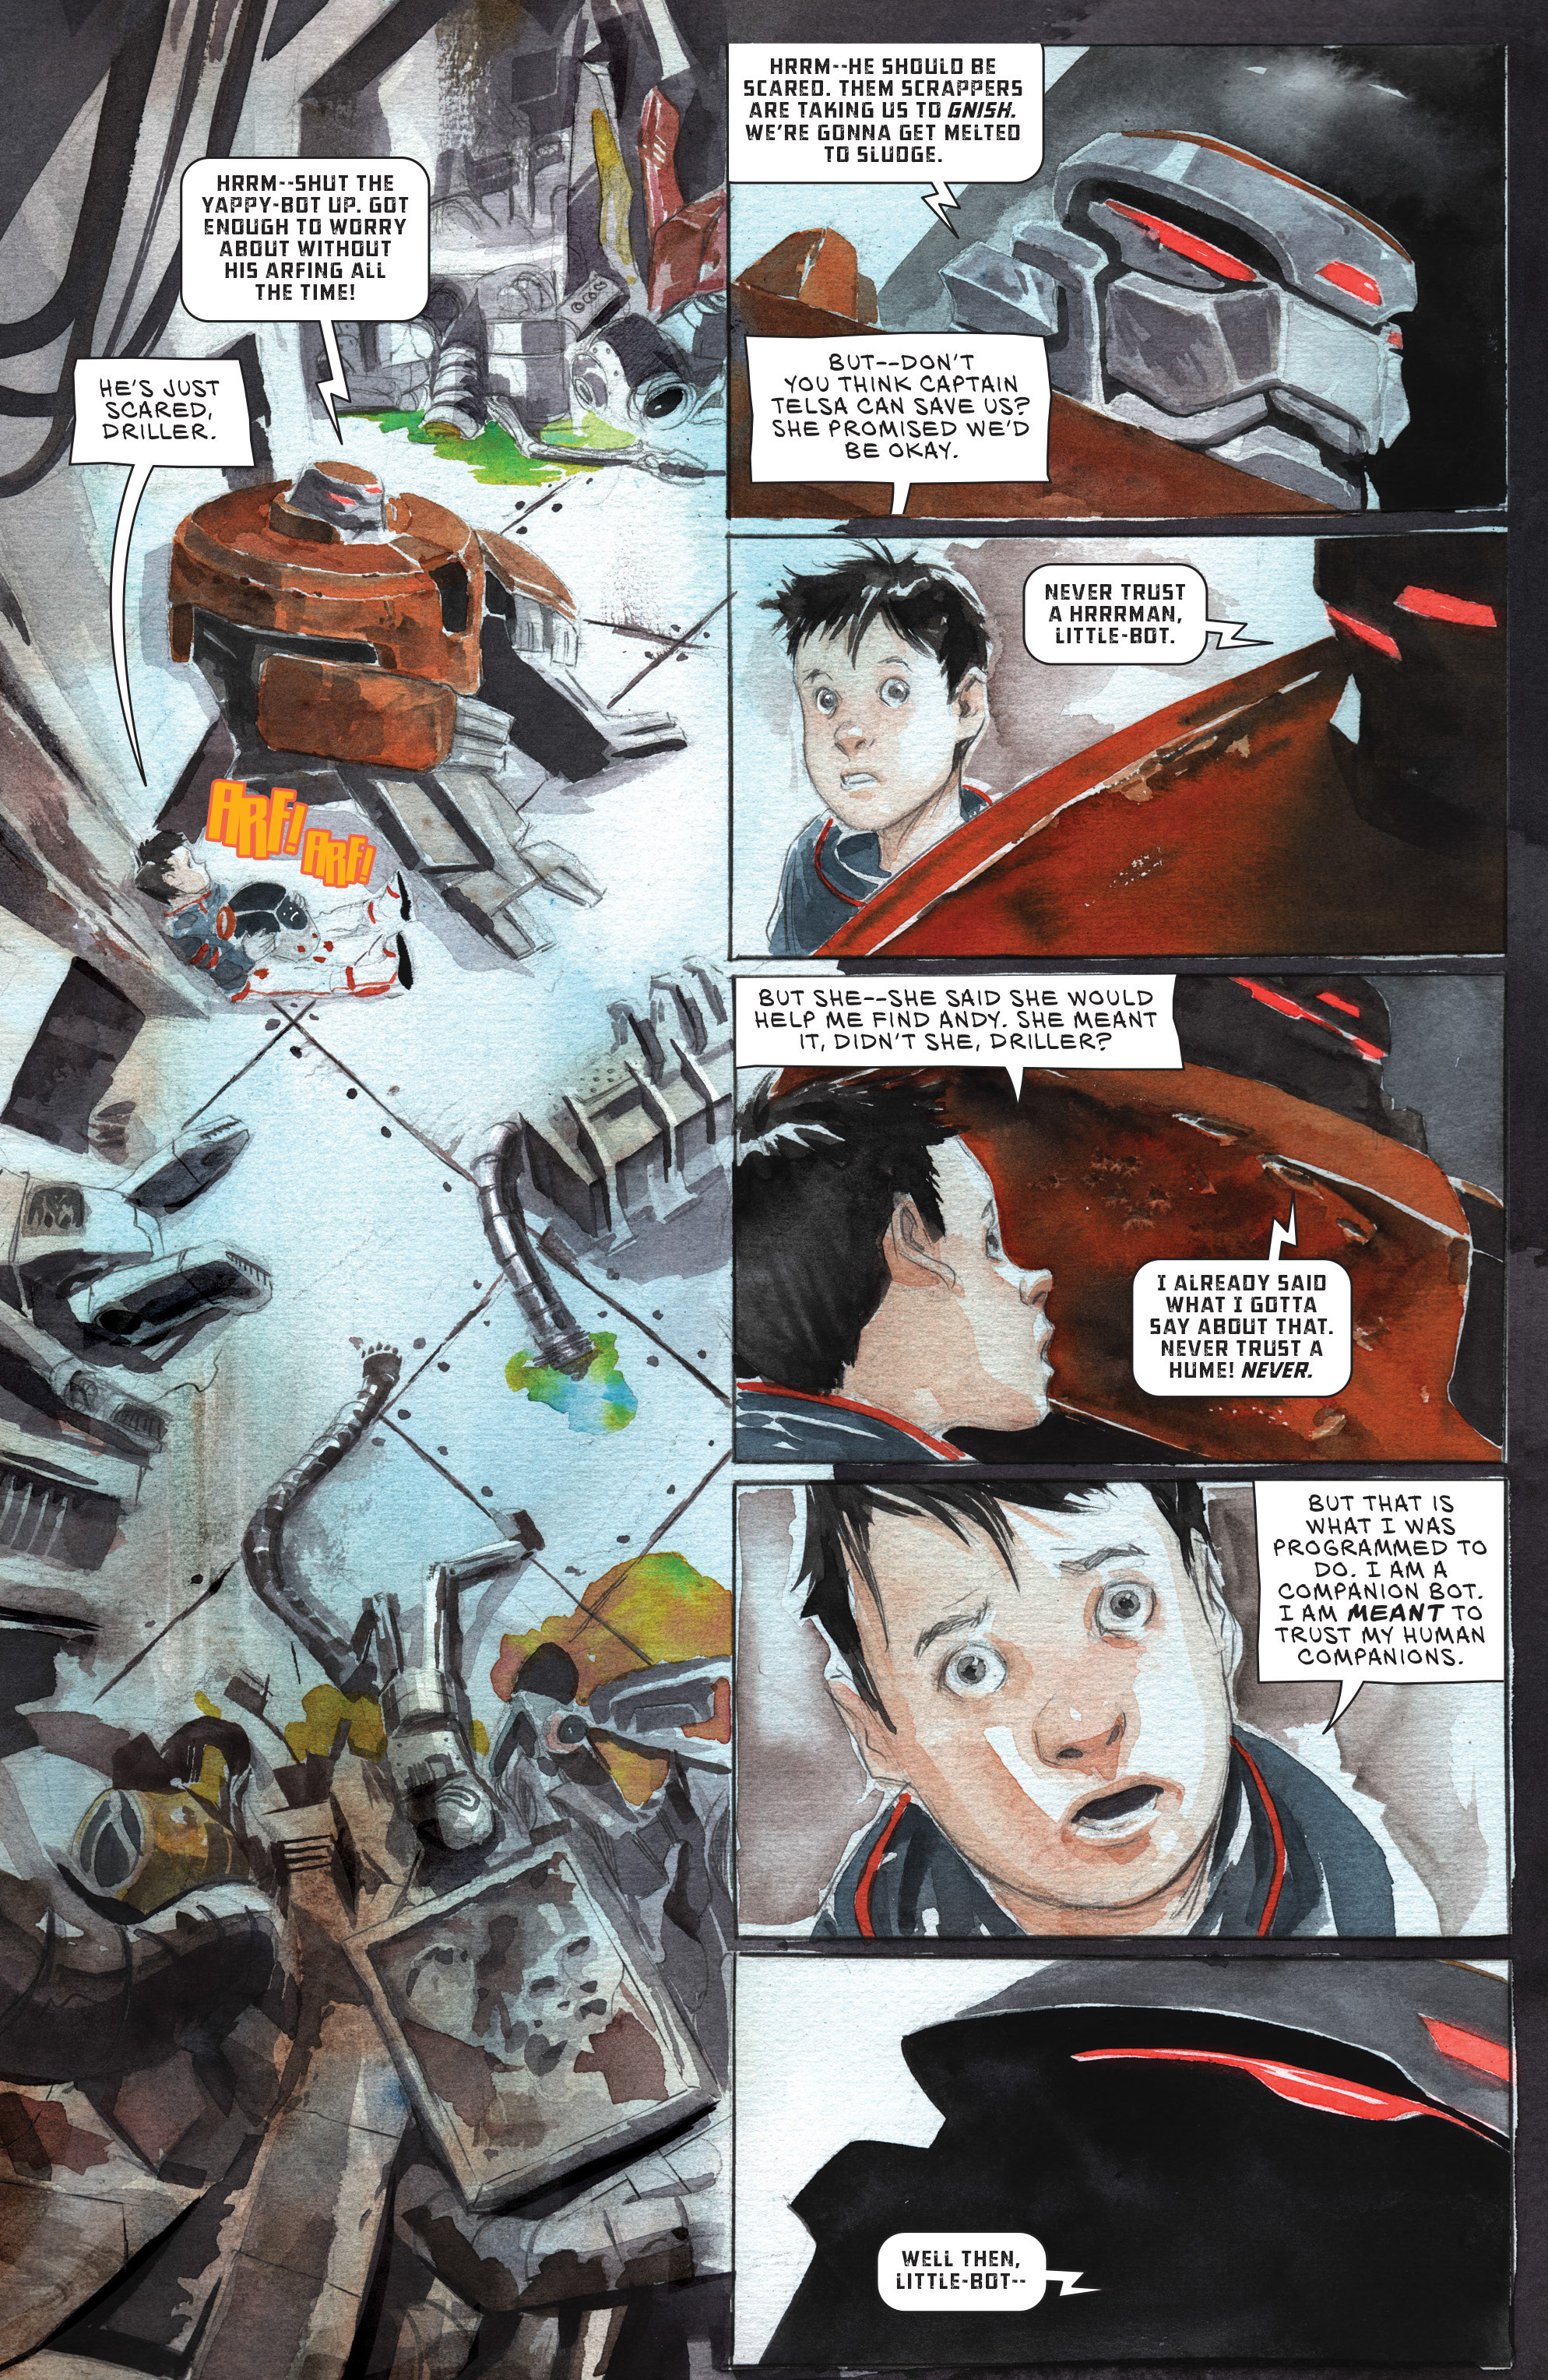 Descender (2015-): Chapter 5 - Page 3